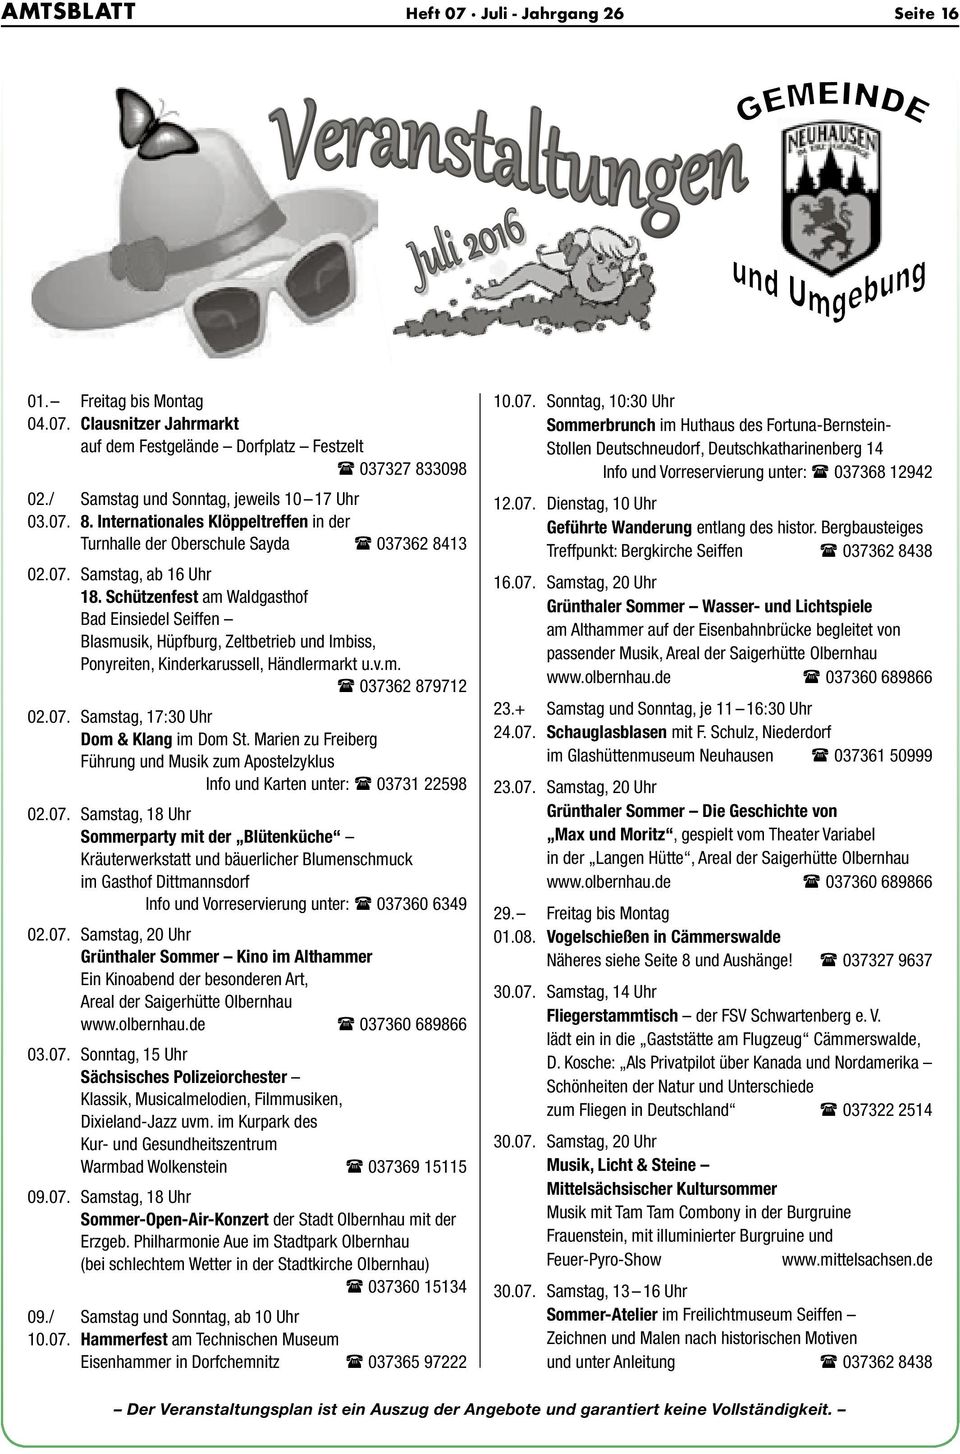 Schützenfest am Waldgasthof Bad Einsiedel Seiffen Blasmusik, Hüpfburg, Zeltbetrieb und Imbiss, Ponyreiten, Kinderkarussell, Händlermarkt u.v.m. 037362 879712 02.07.